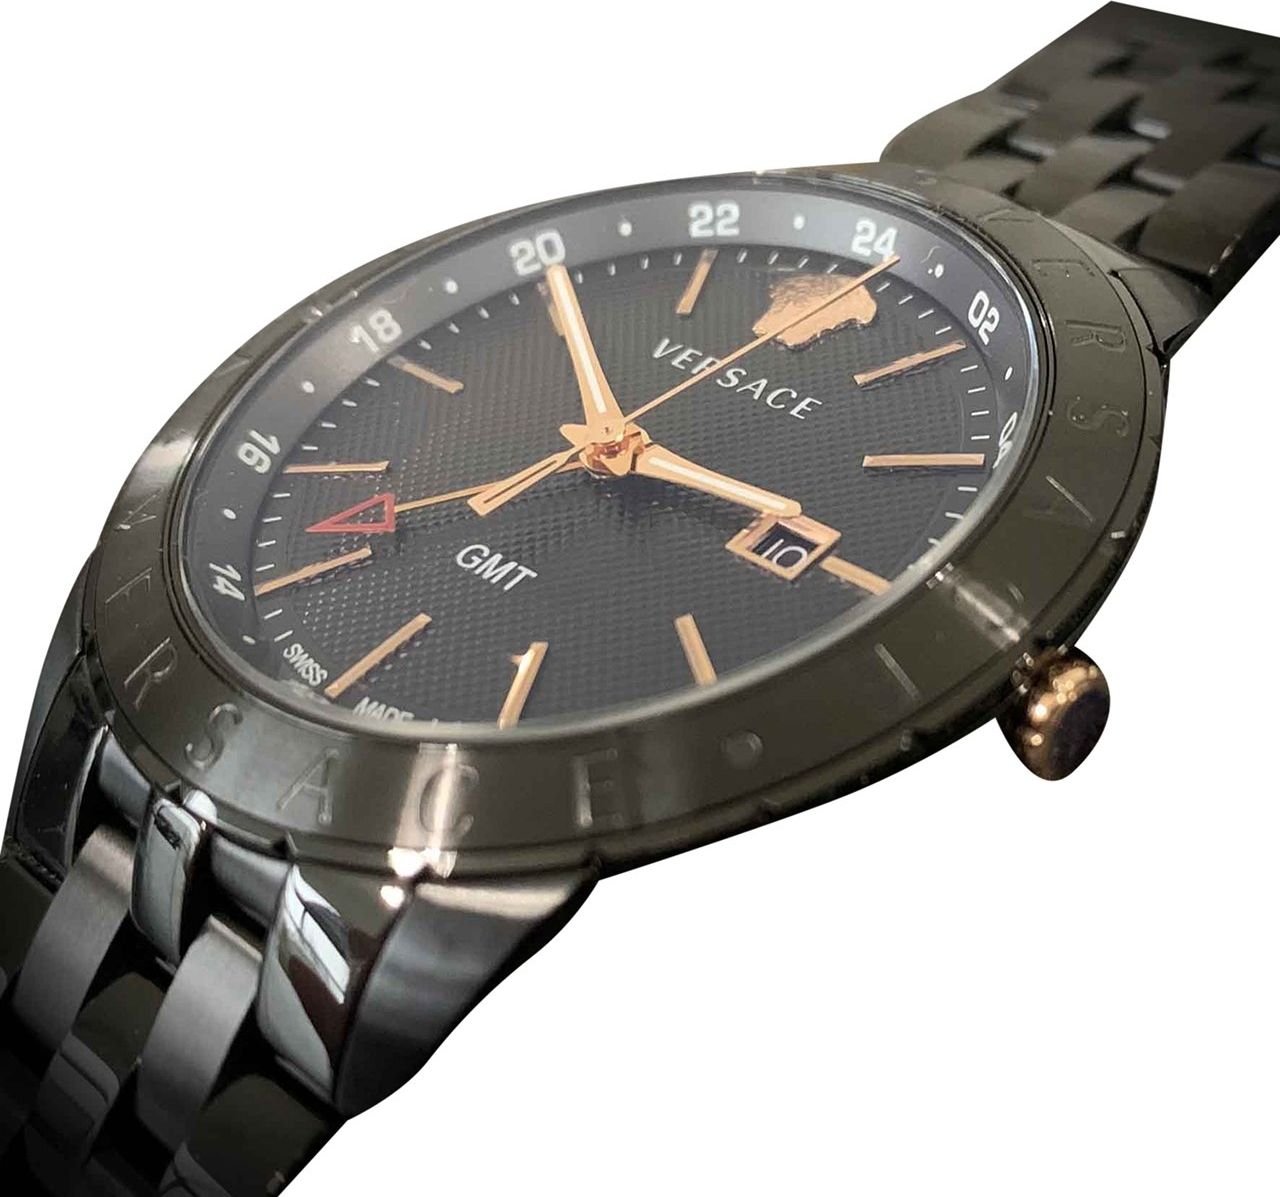 Versace VEBK00618 Univers 43 mm heren horloge Zwart